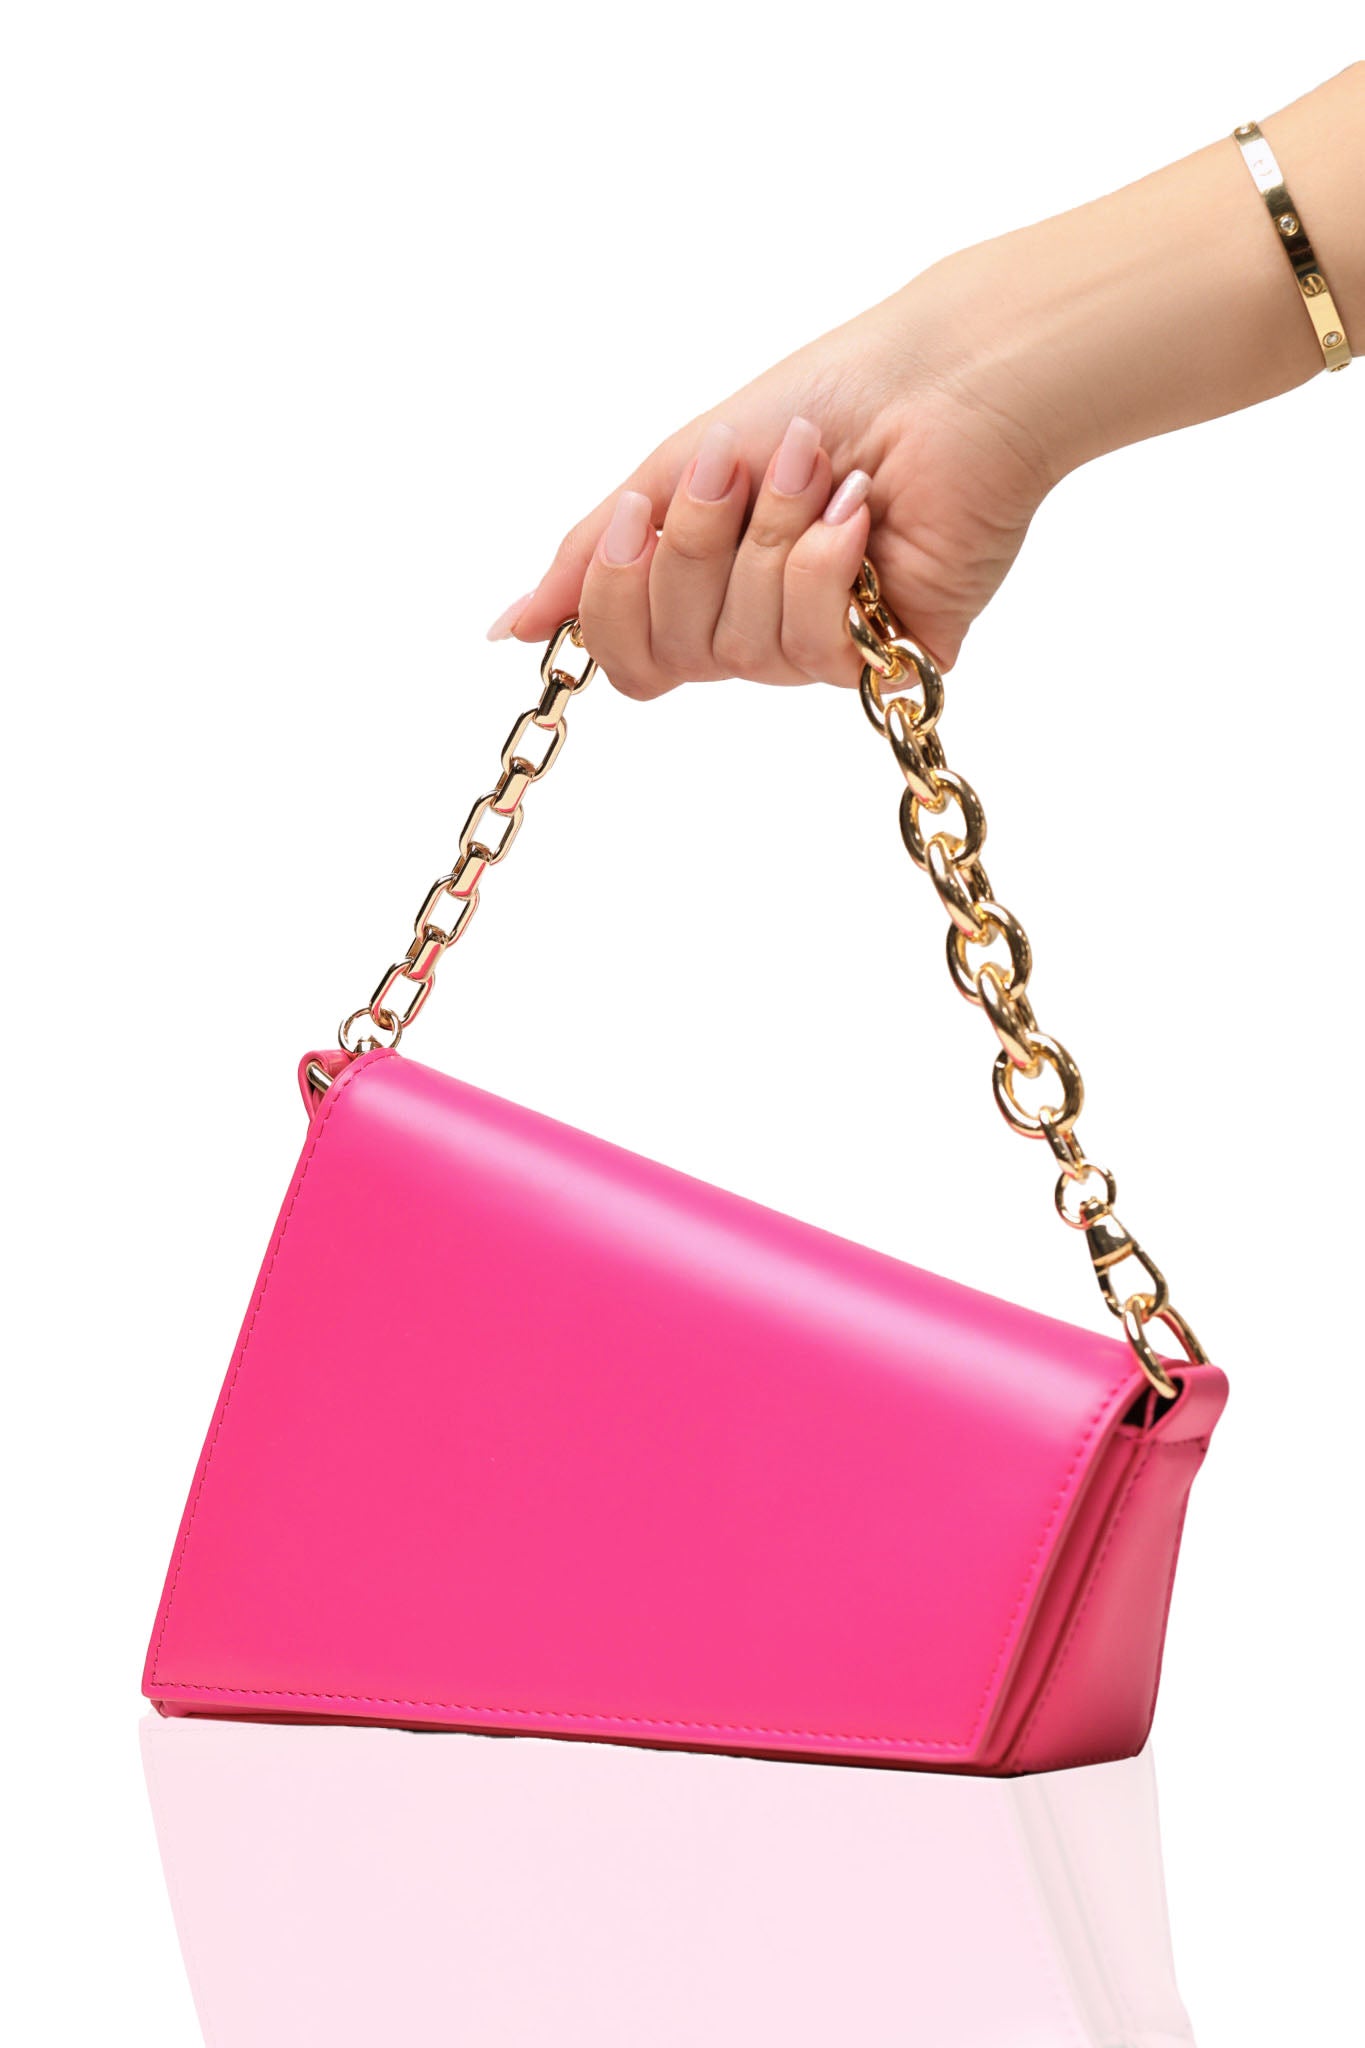 At An Angle Bag (Pink)